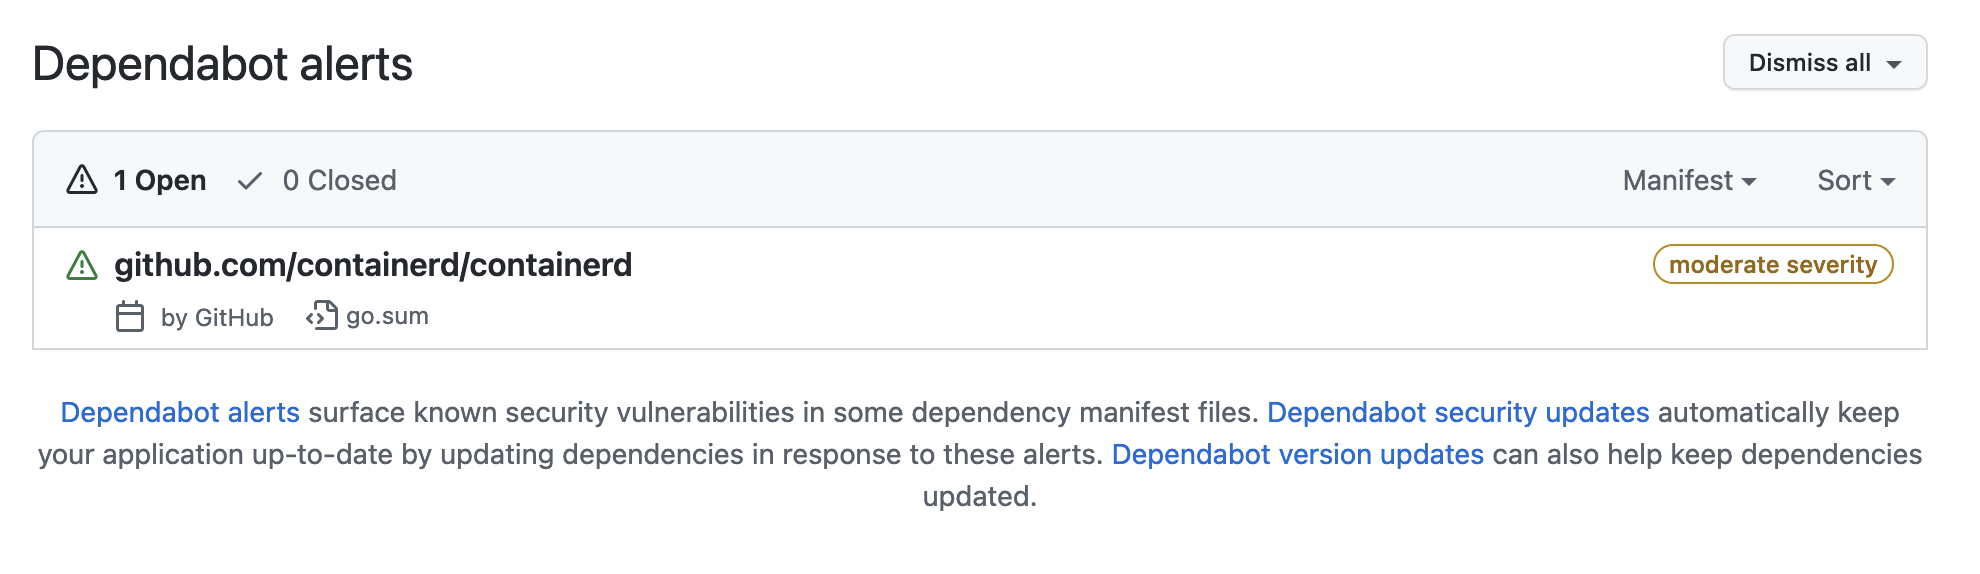 Screenshot of Dependabot alerts